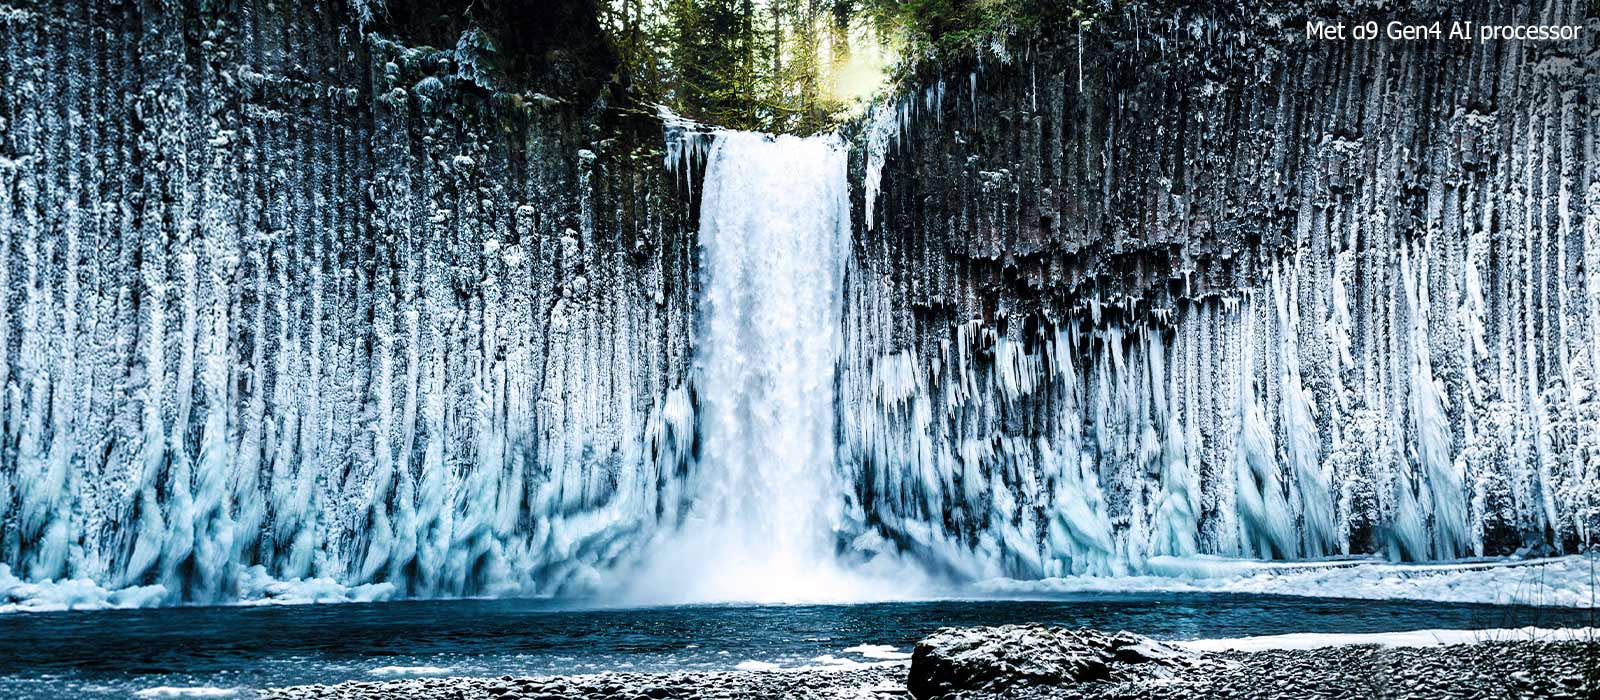 Schuifvergelijking van de beeldkwaliteit van een bevroren waterval in een bos.